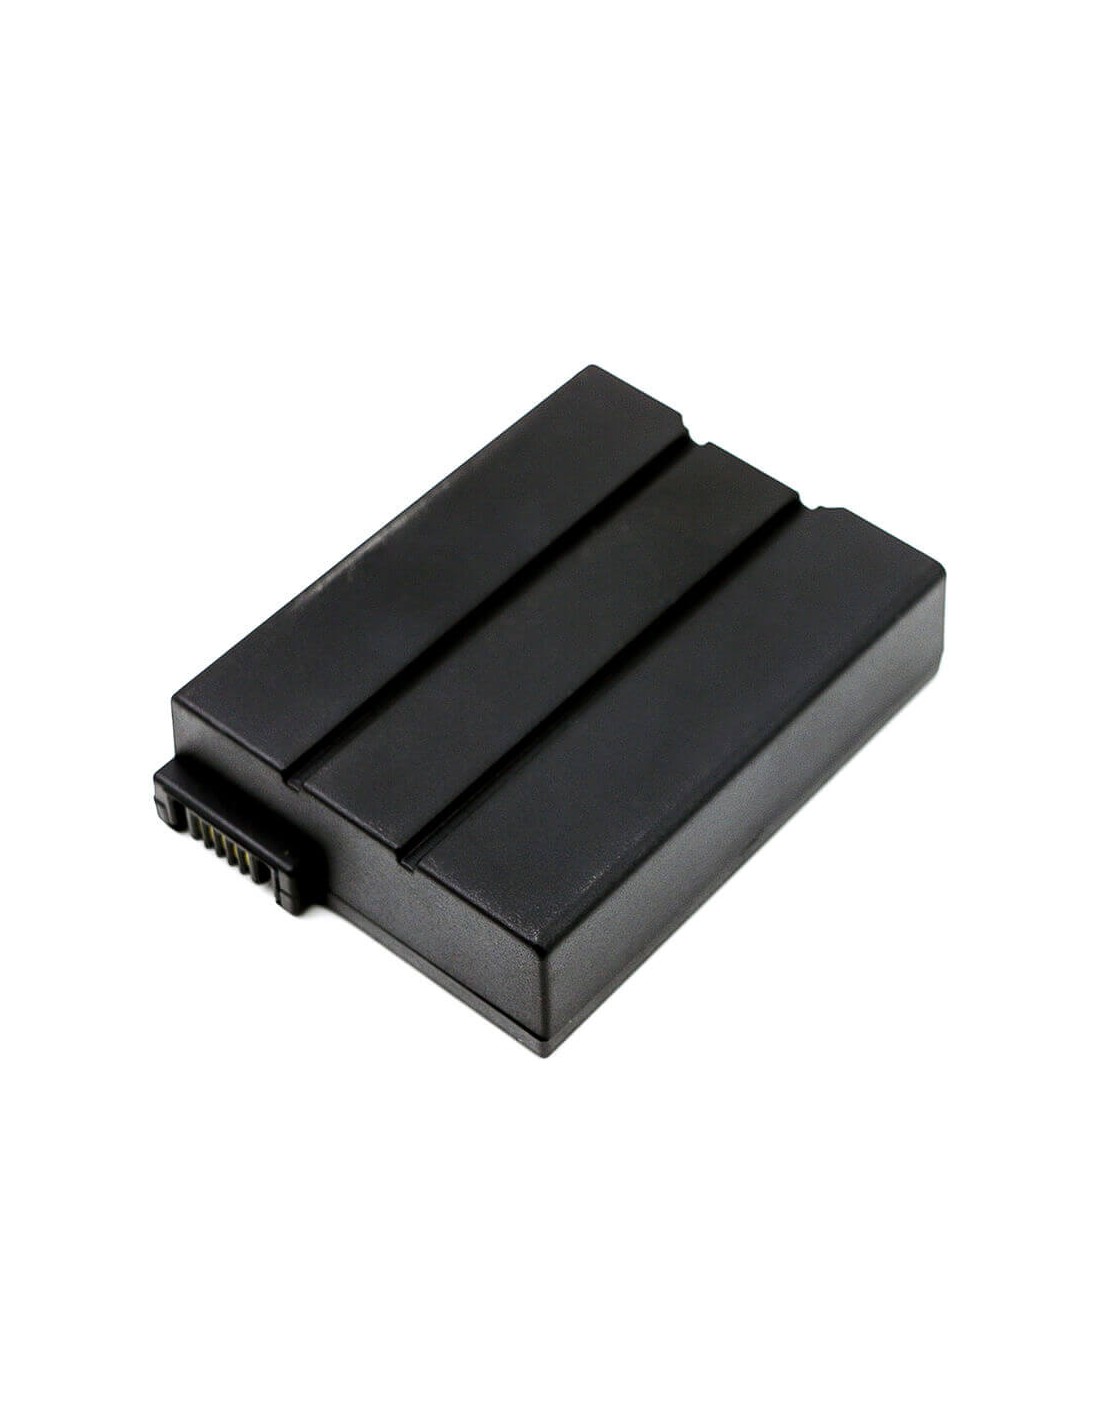 Battery for Cisco 4033435, Flk644a, Pb013, Smpcm1, Foxlink, Flk644a 10.8V, 3400mAh - 36.72Wh